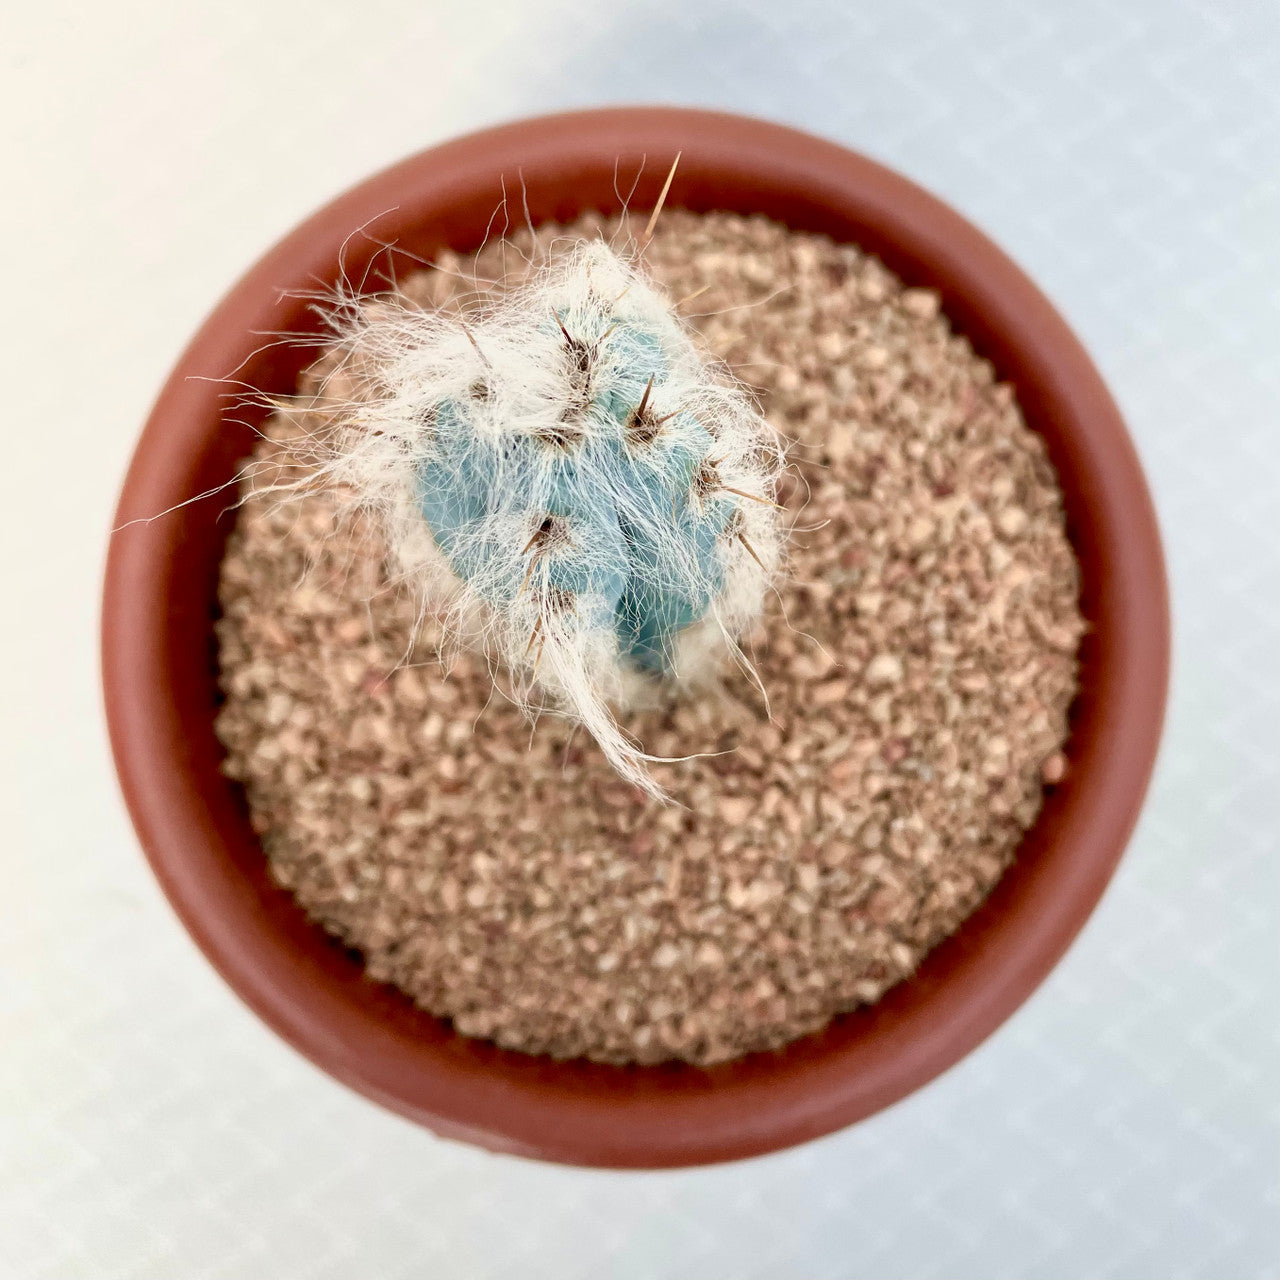 Pilosocereus Pachycladus (Blue Torch Cactus) top view